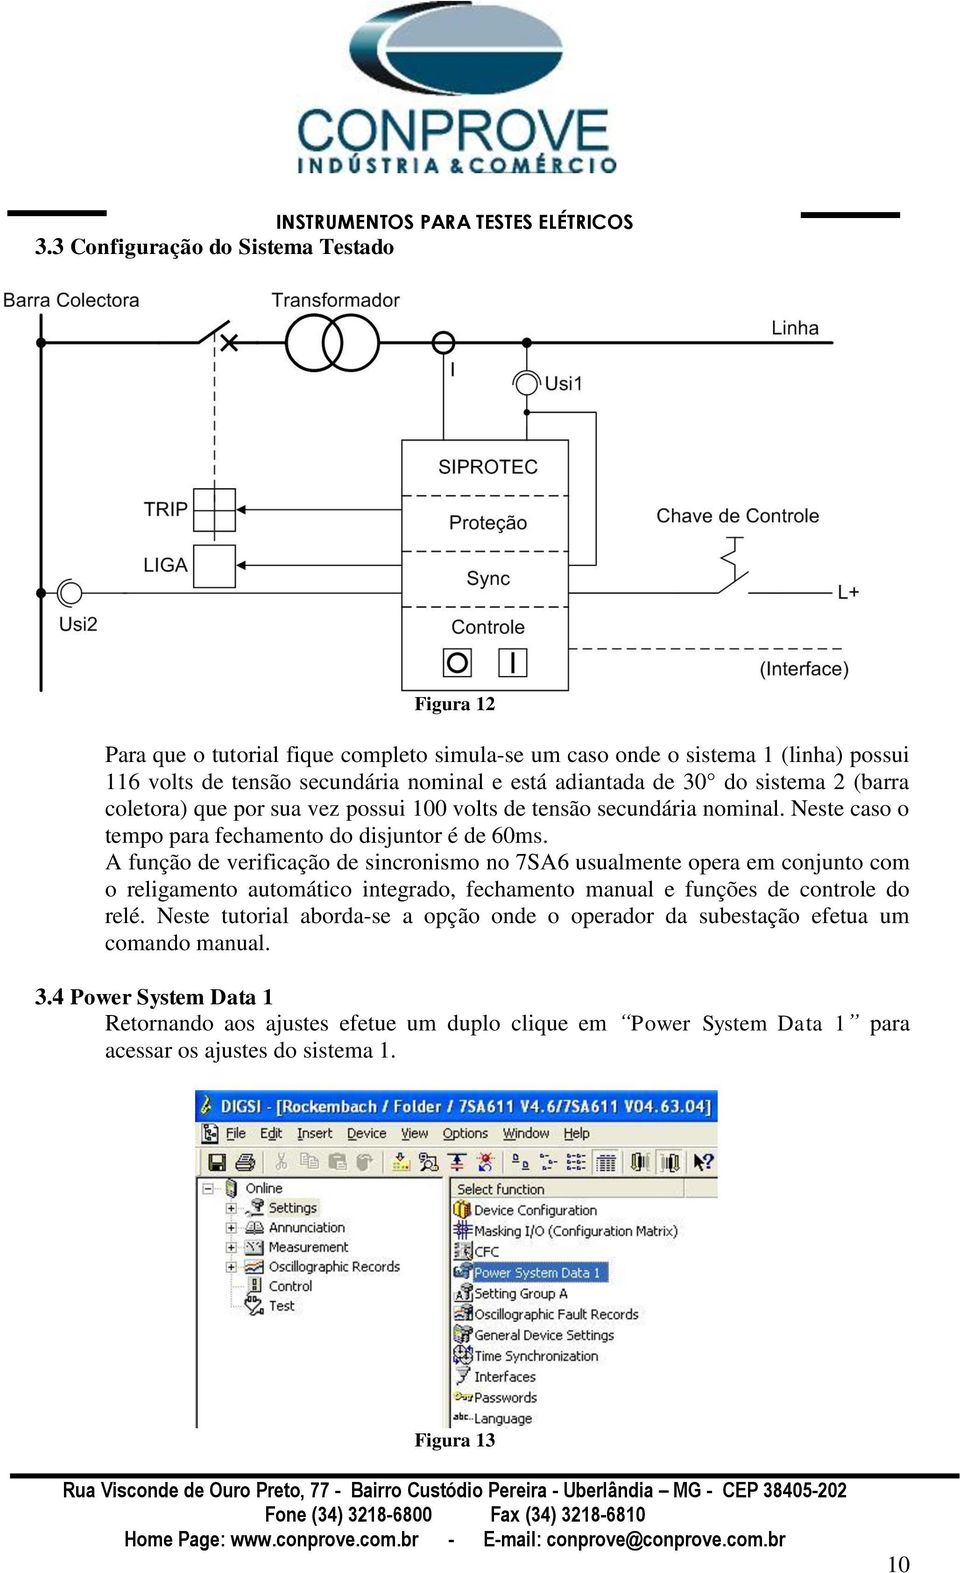 A função de verificação de sincronismo no 7SA6 usualmente opera em conjunto com o religamento automático integrado, fechamento manual e funções de controle do relé.